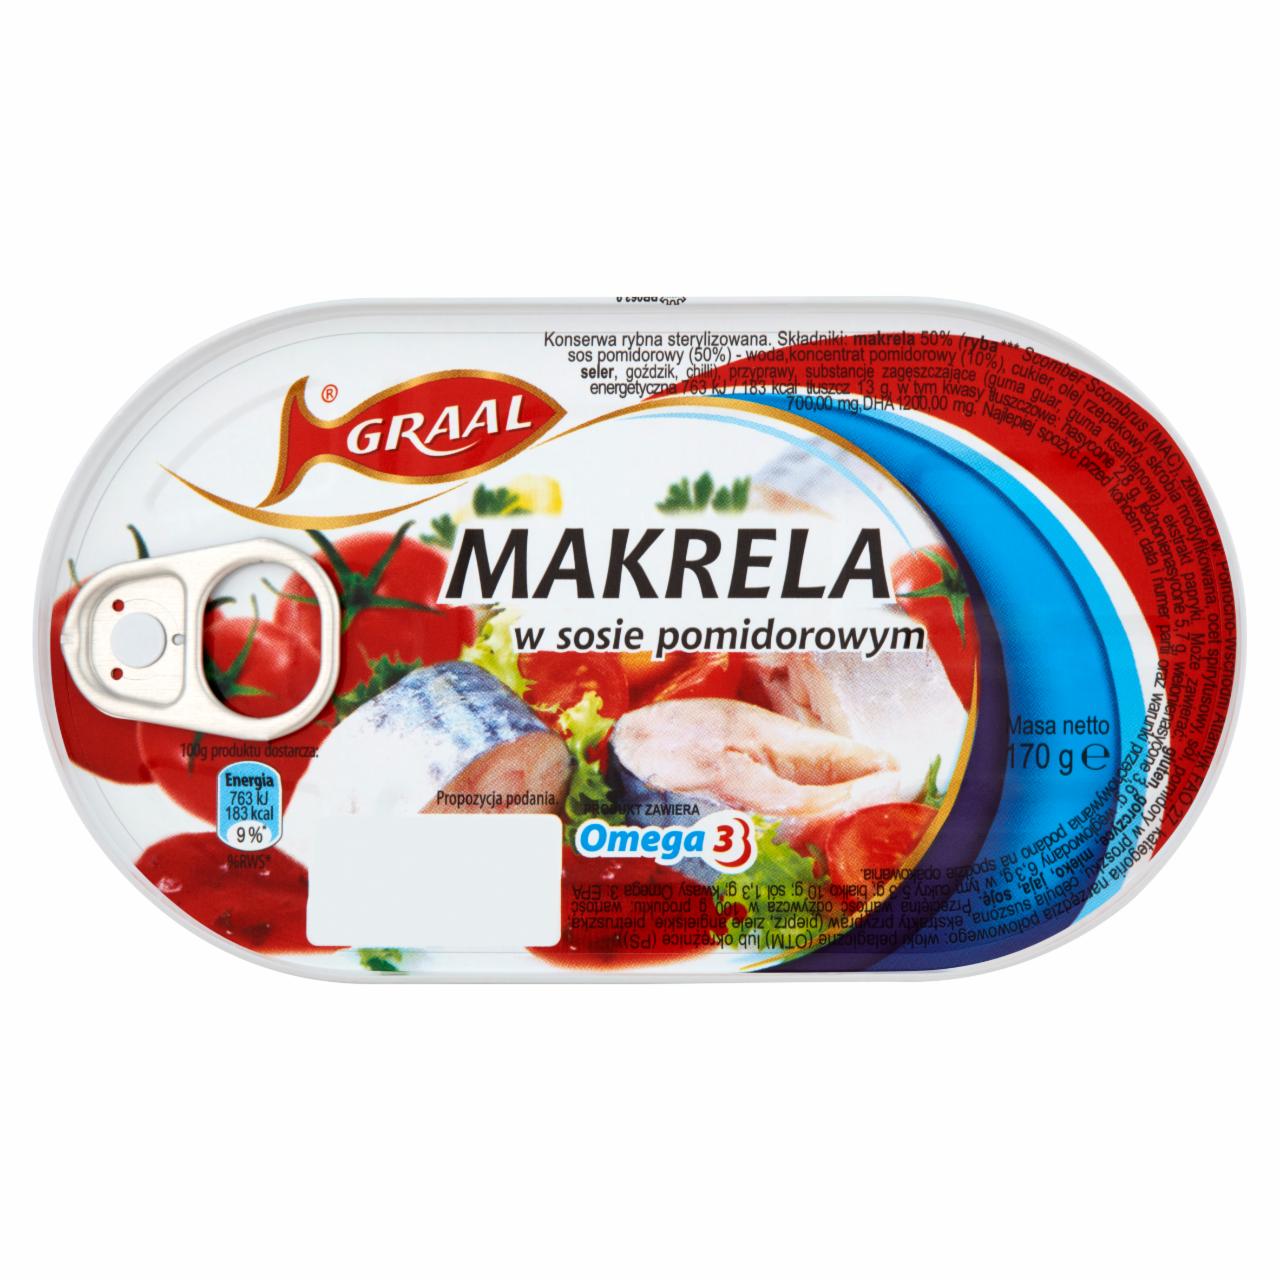 Photo - GRAAL Mackerel in Tomato Sauce 170 g